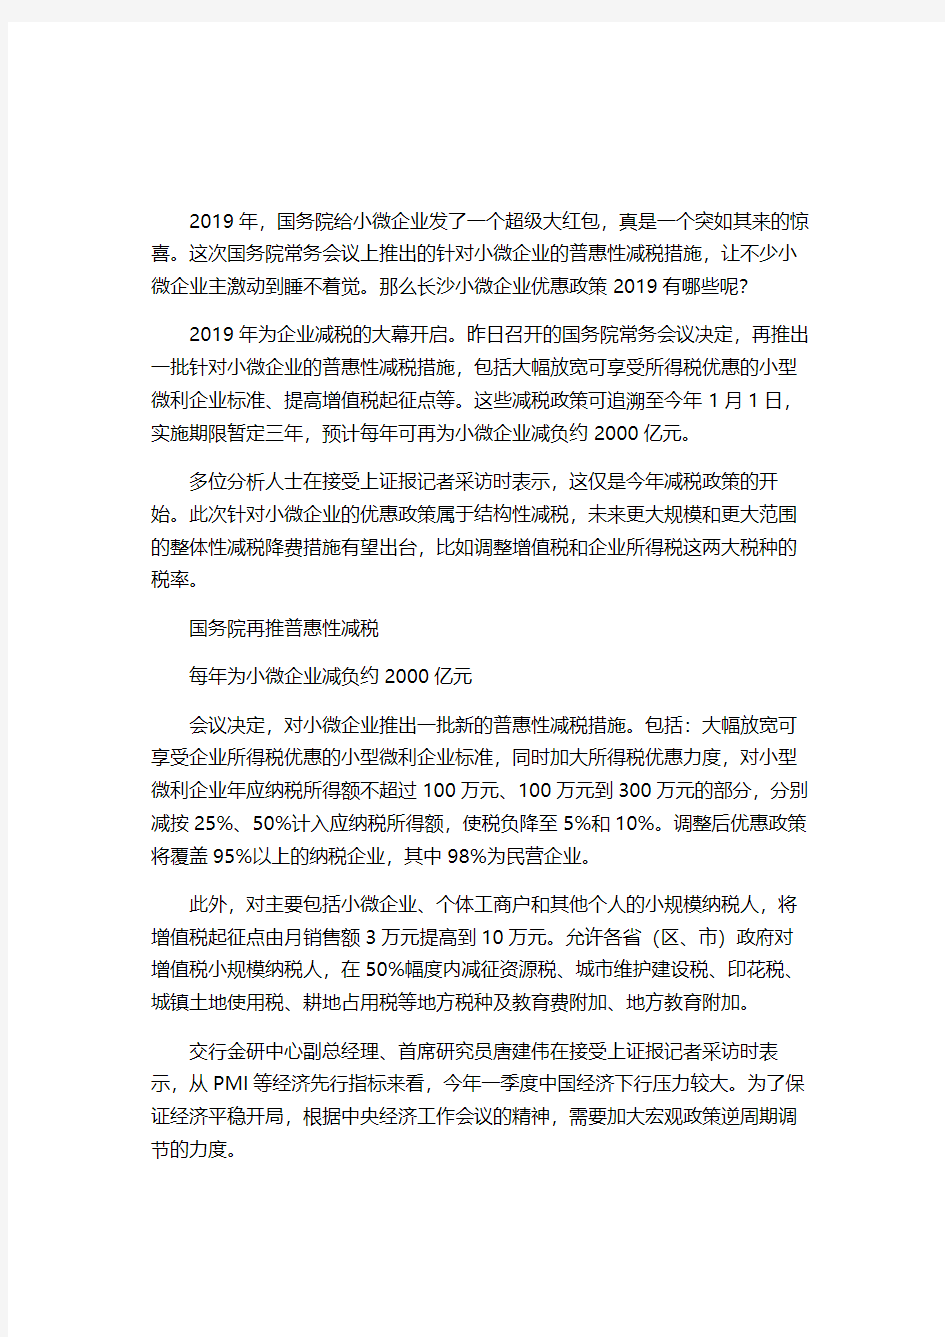 长沙小微企业优惠政策2019